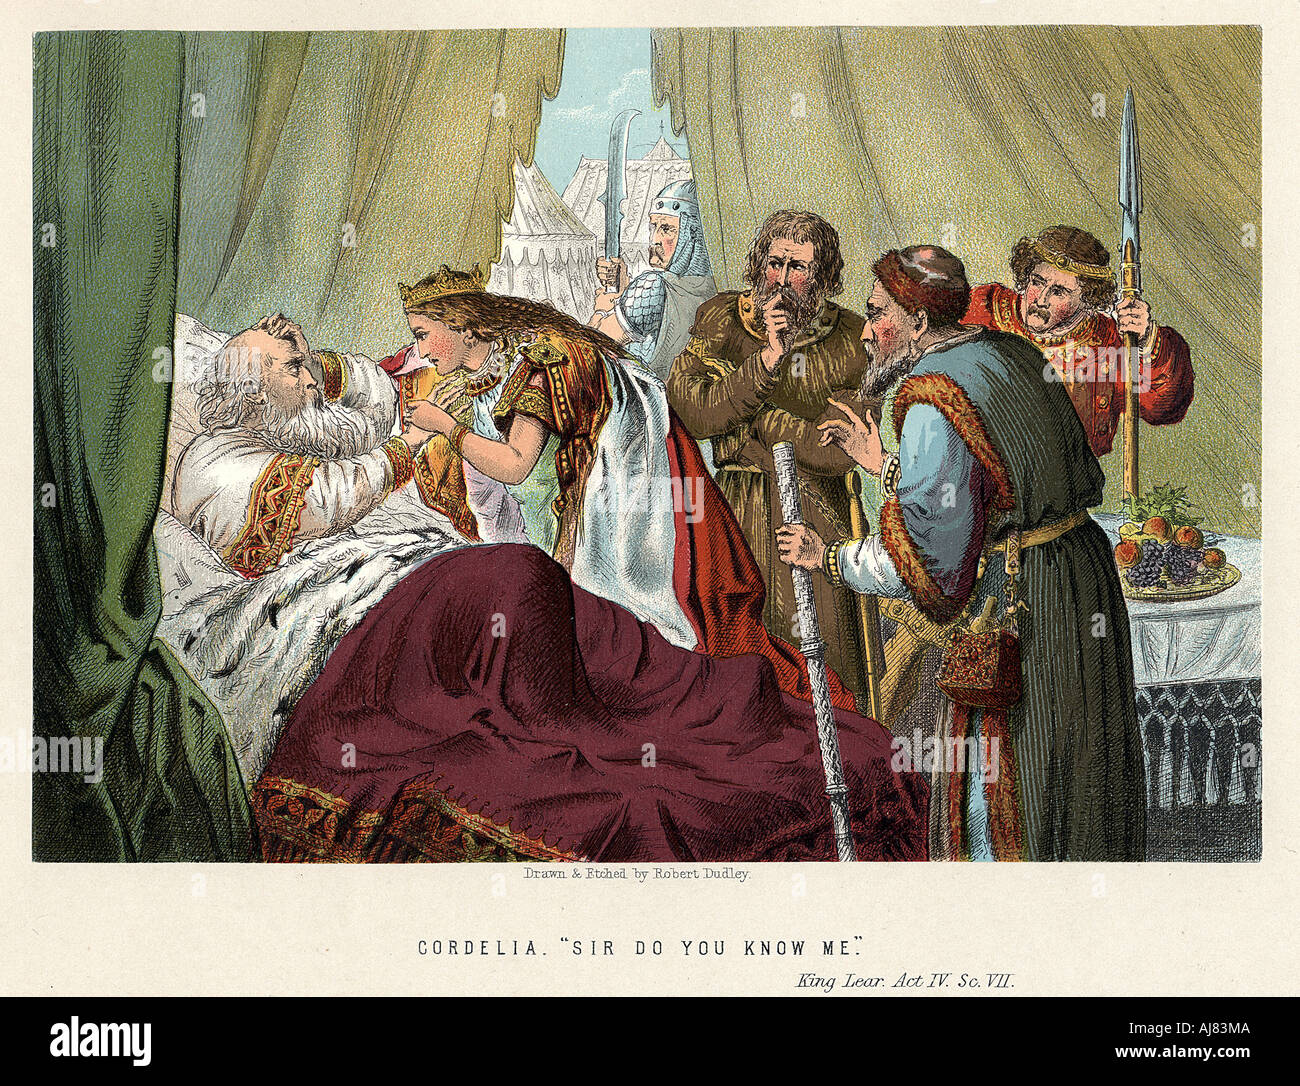 Scene from Shakespeare's King Lear, c1858. Artist: Robert Dudley Stock Photo